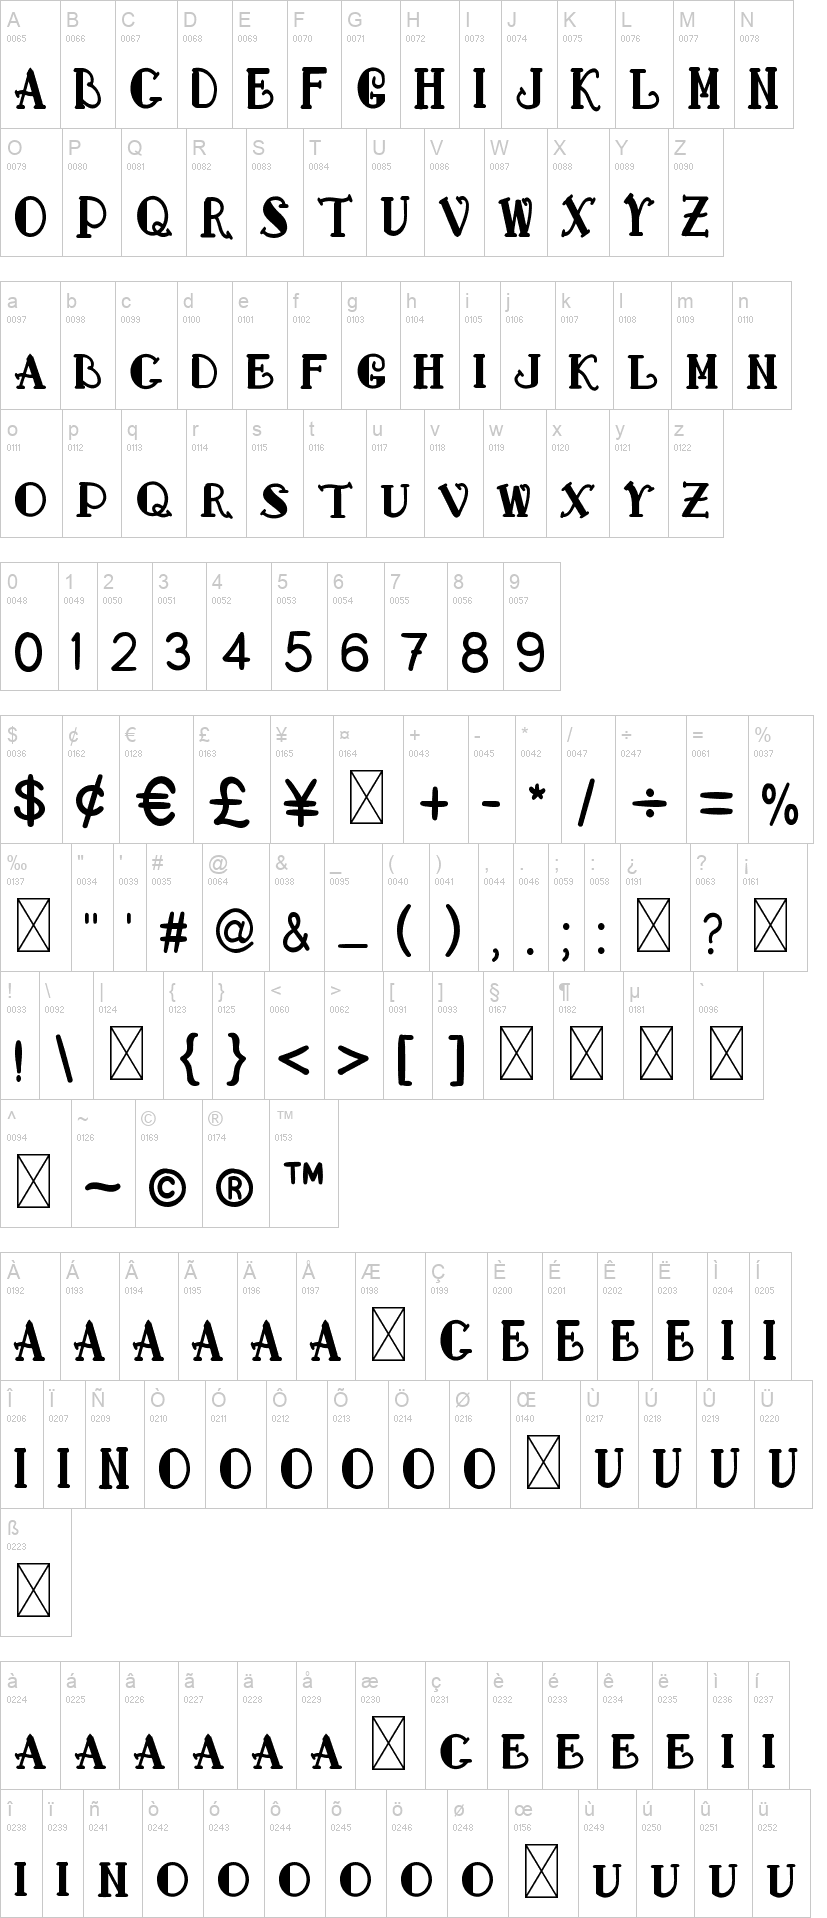 Whallmark Serif